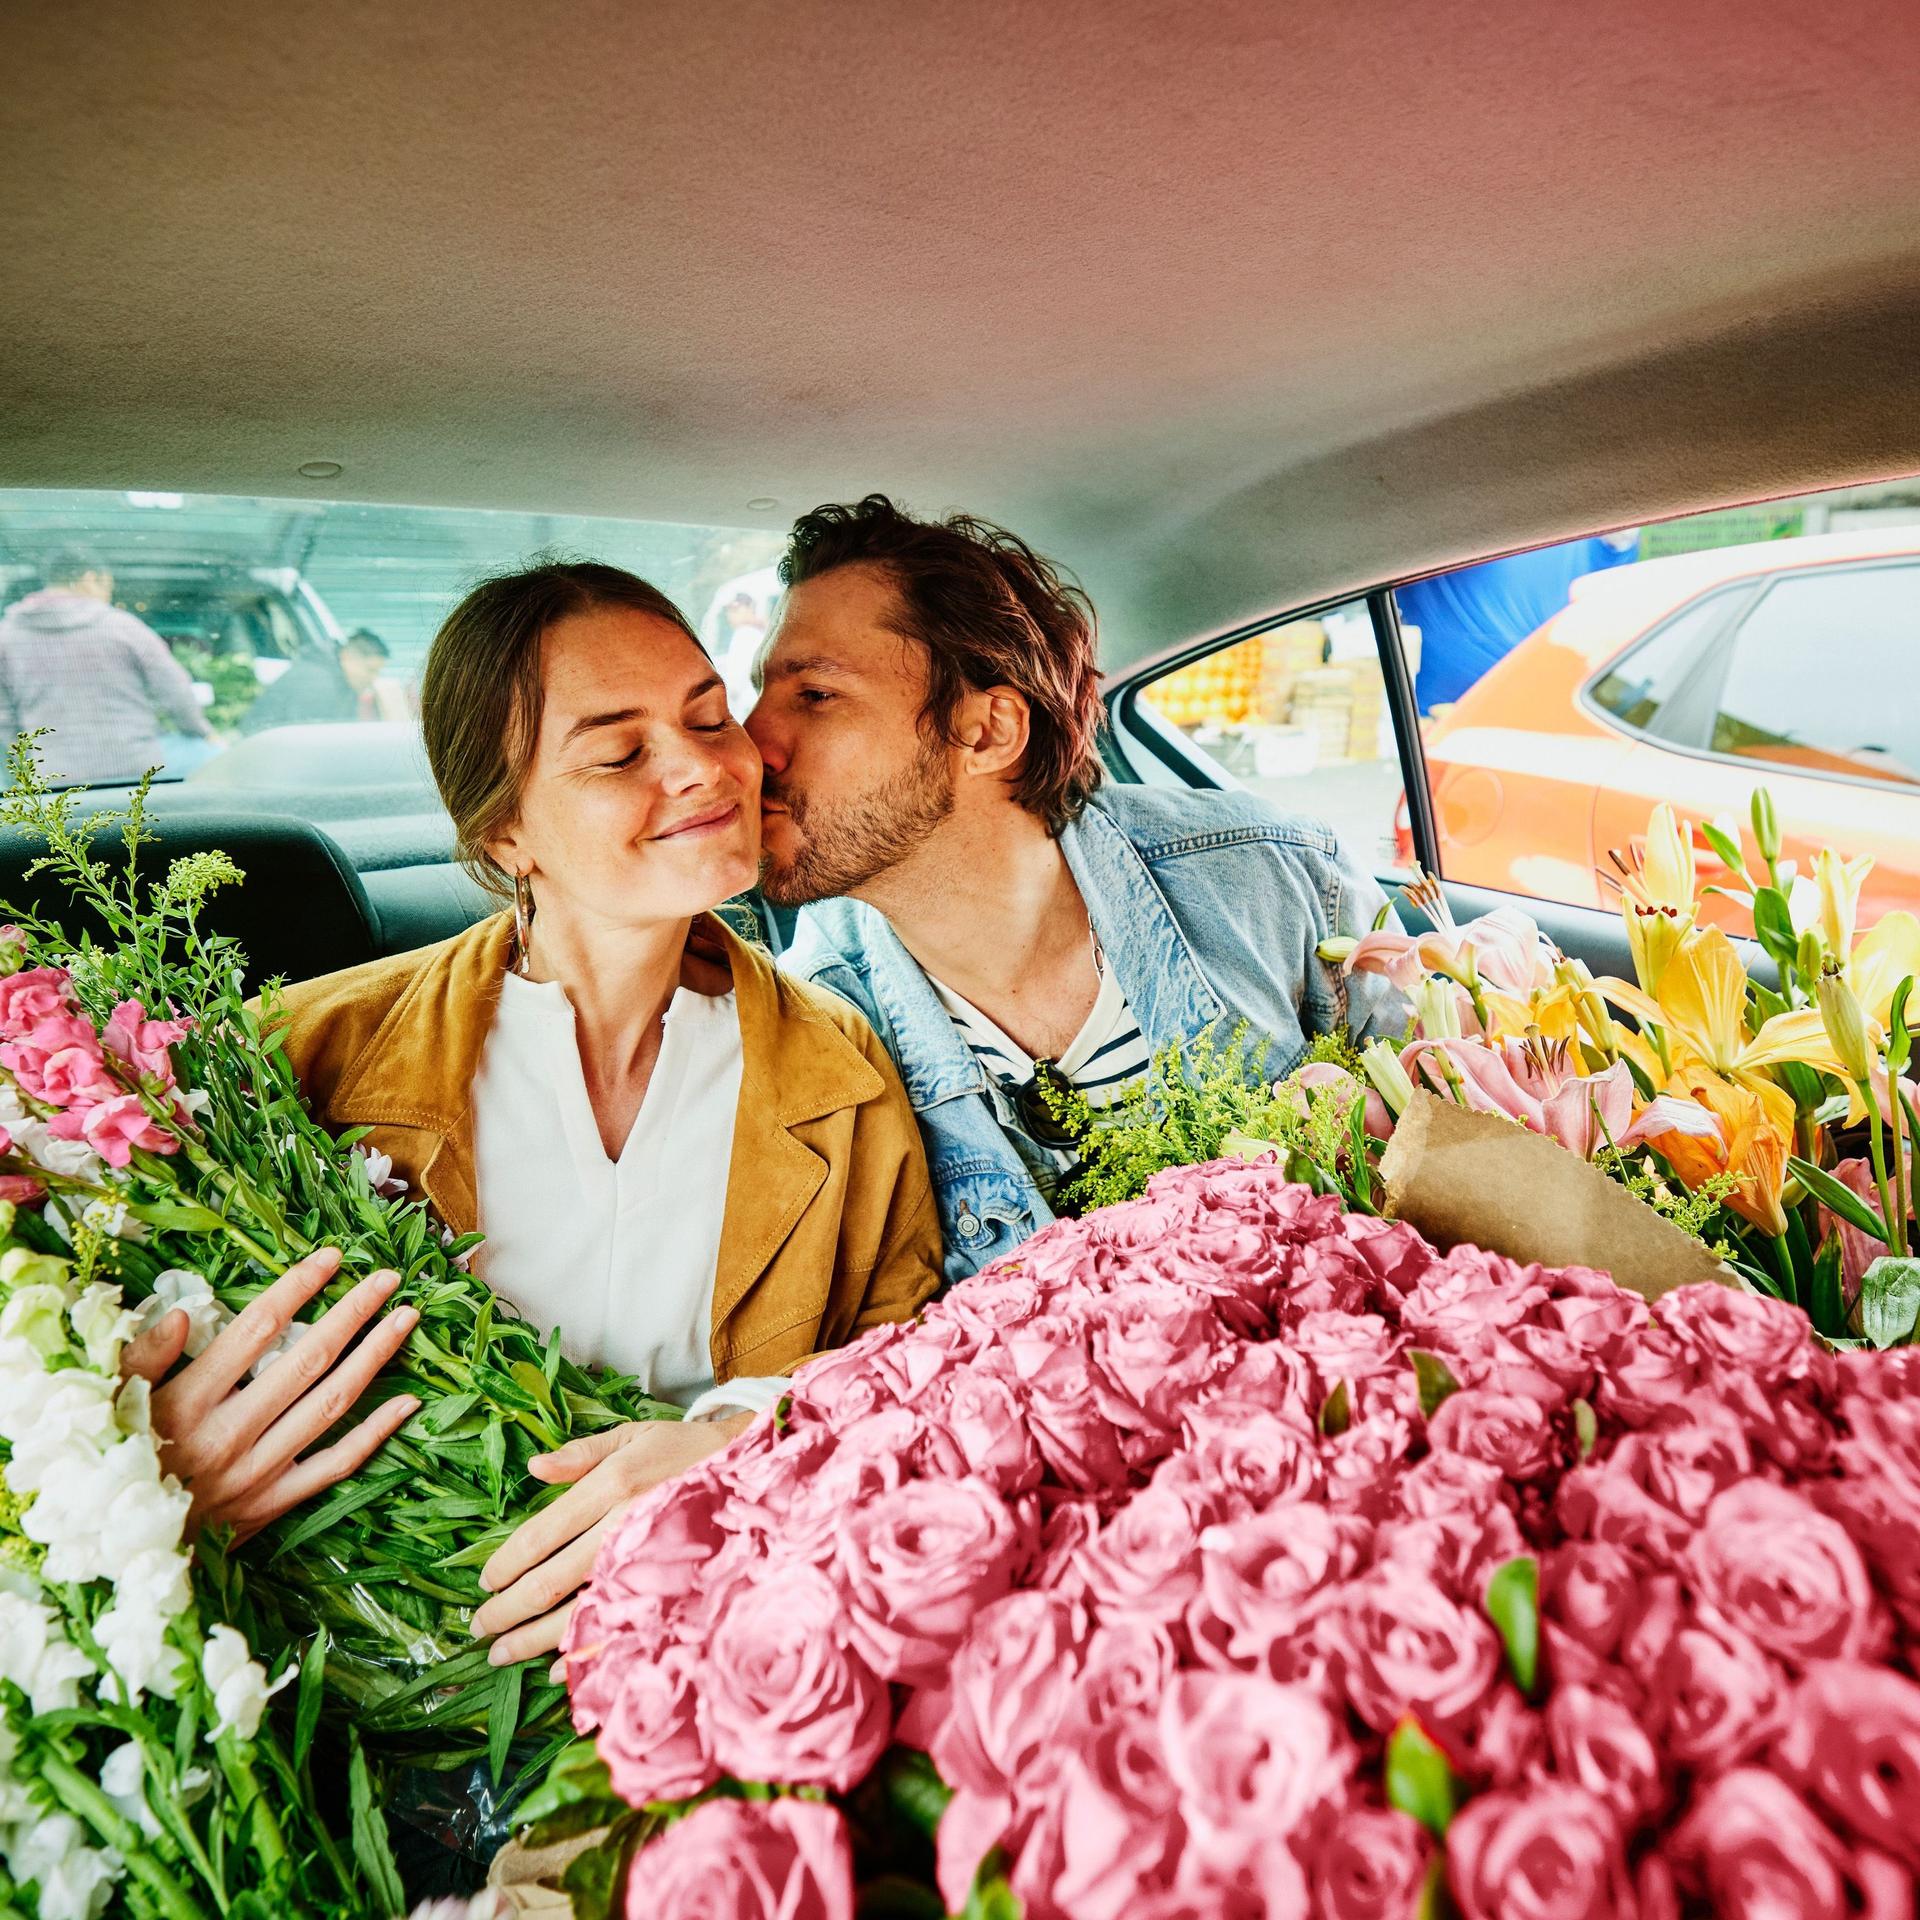 Ein Mann und eine Frau sitzen auf dem Rücksitz eines Autos. Das Auto ist voll mit bunten Schnittblumen.